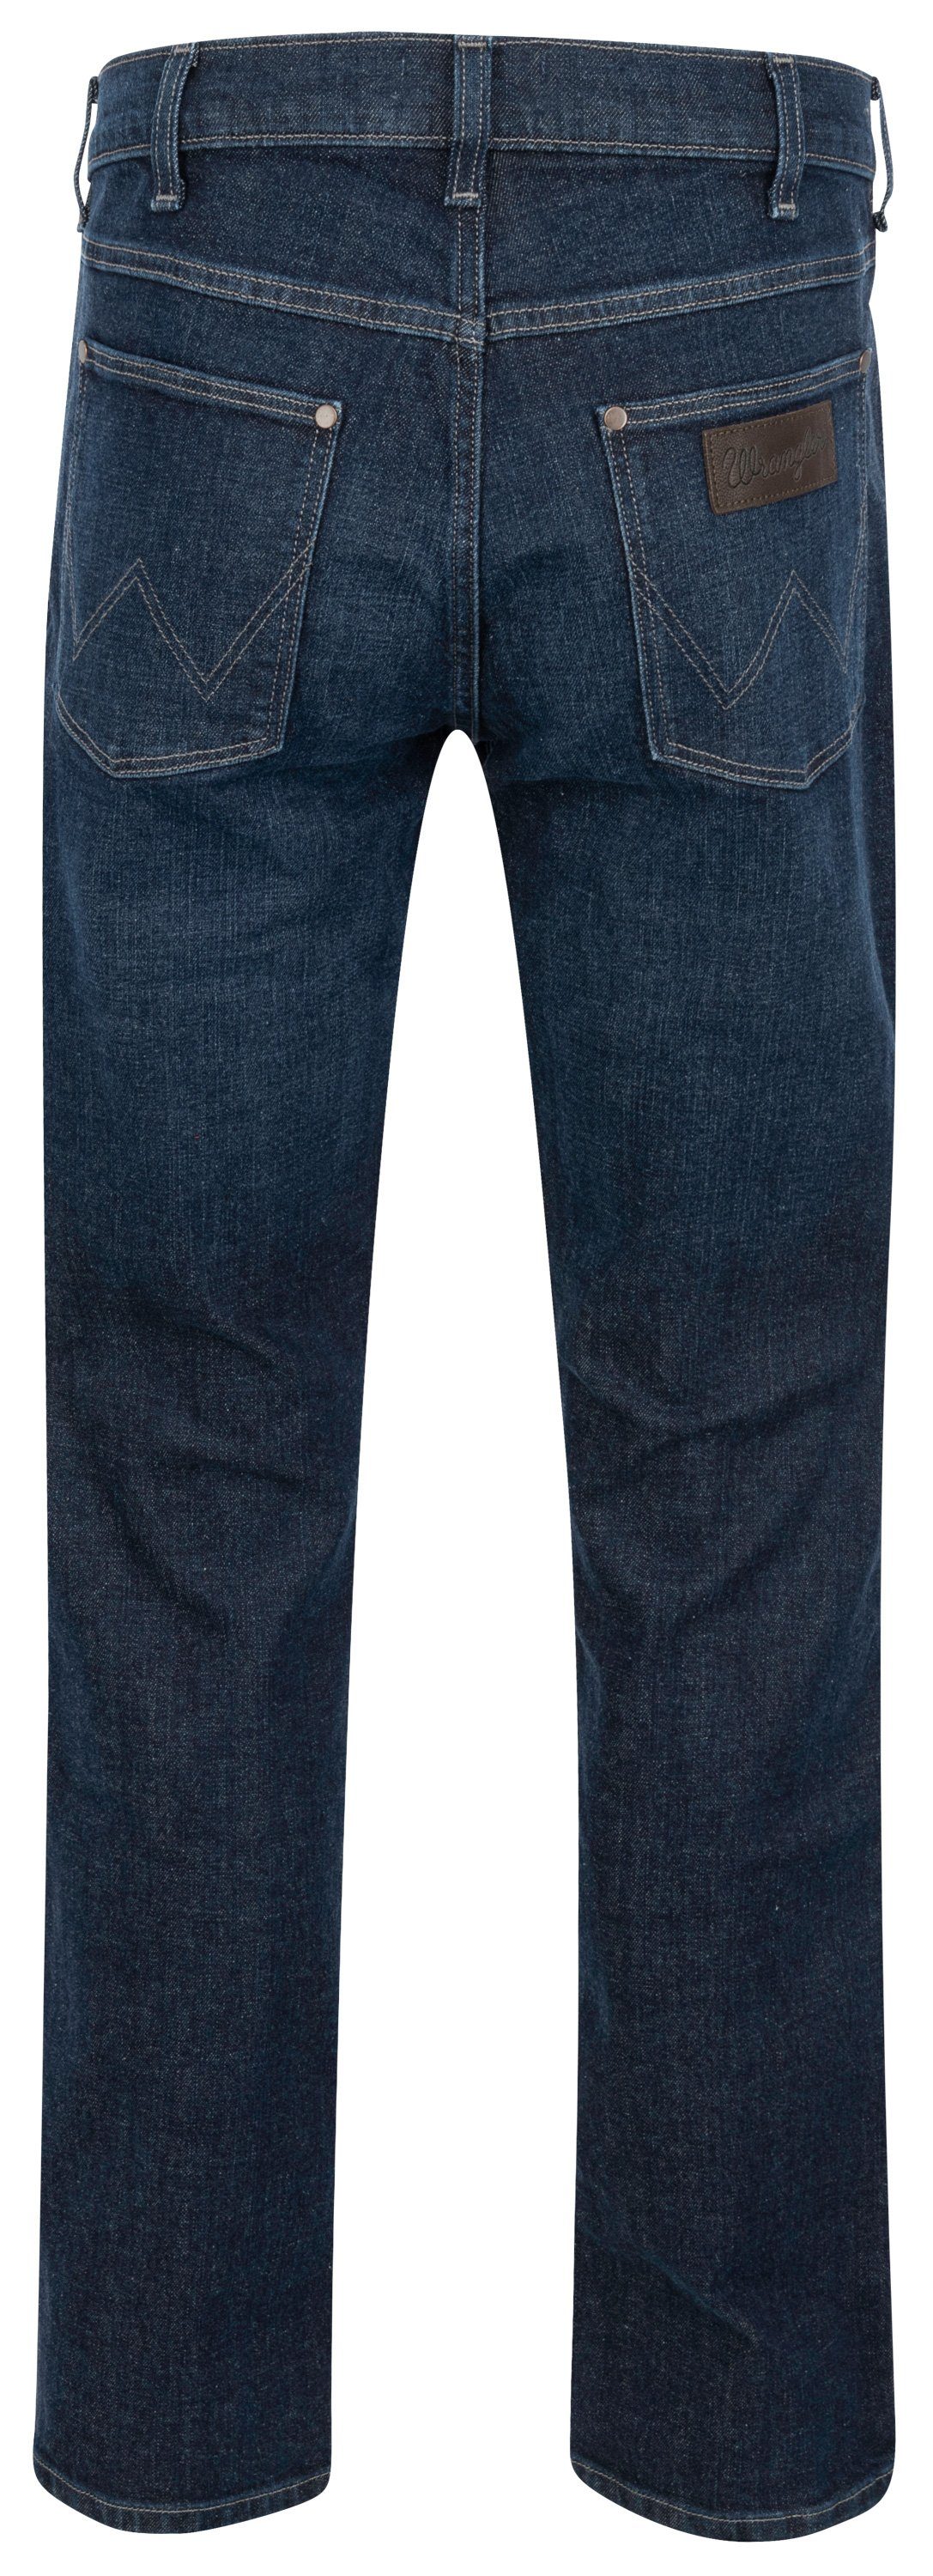 5-Pocket-Jeans 112339305 wonderwall Wrangler WRANGLER GREENSBORO